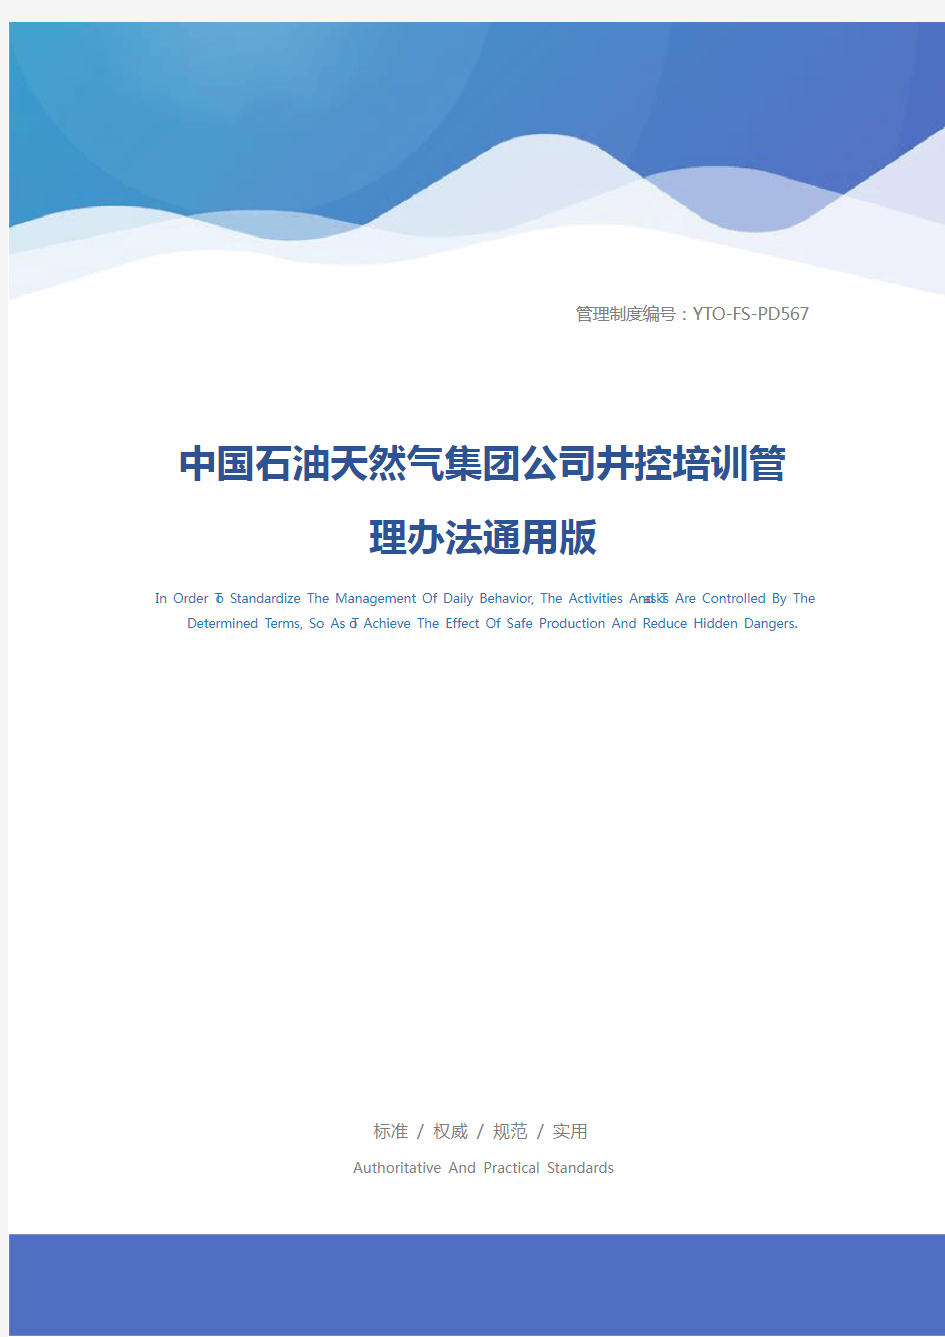 中国石油天然气集团公司井控培训管理办法通用版